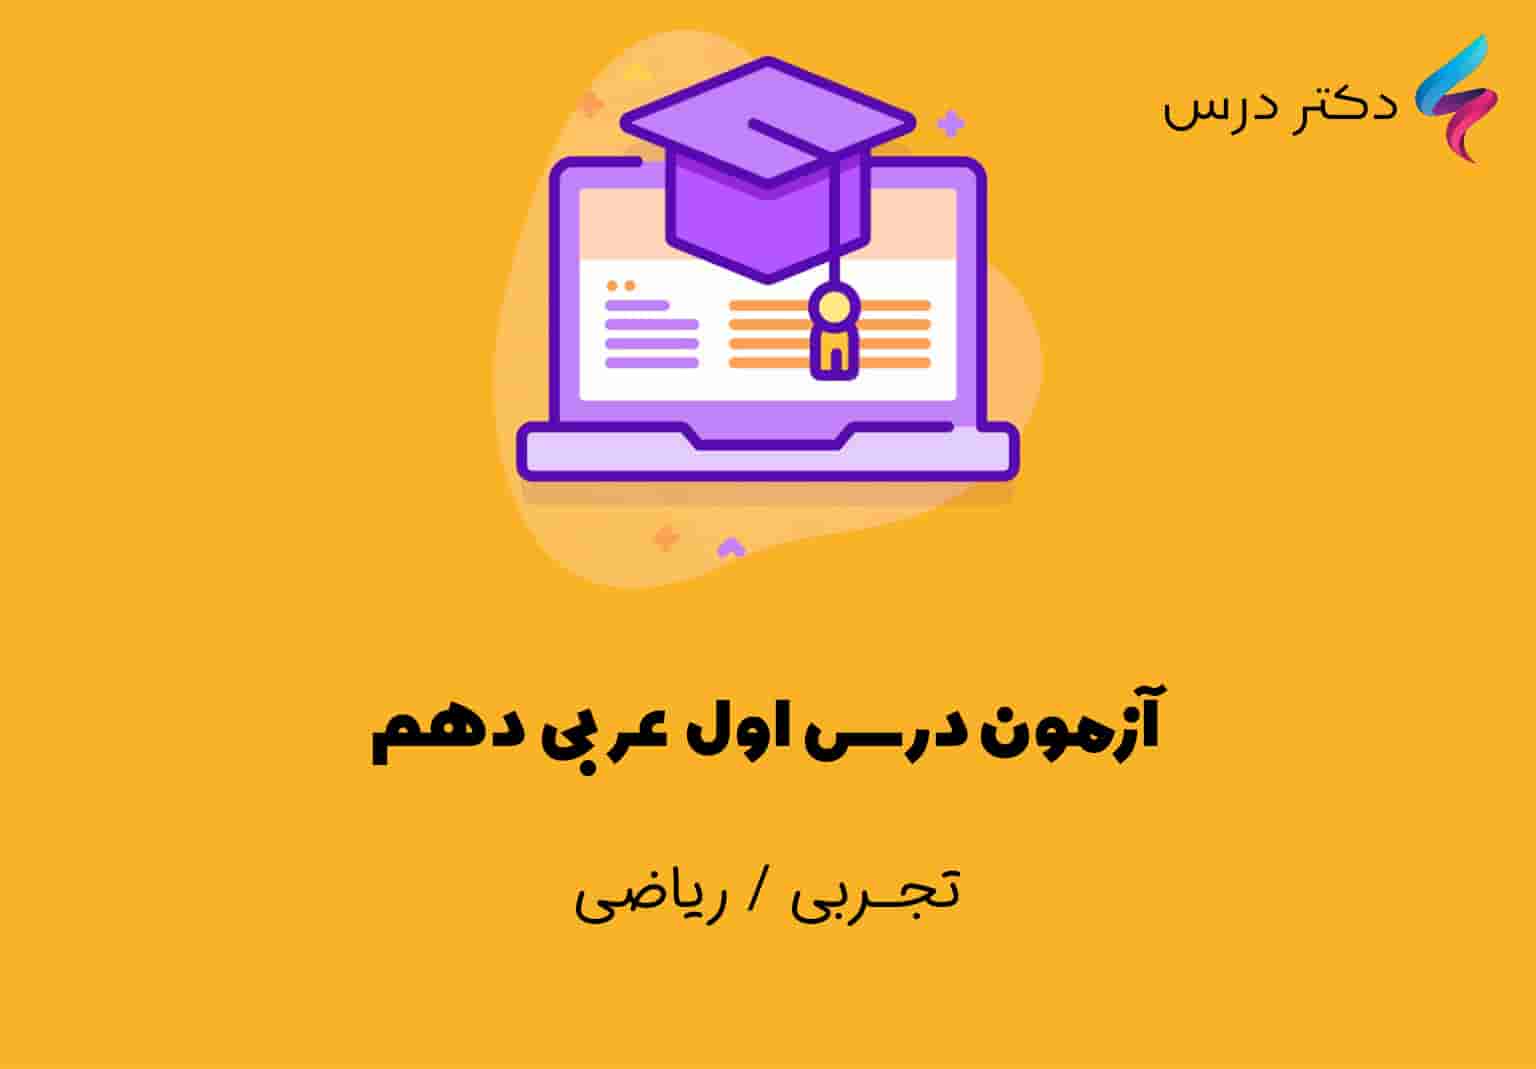 آزمون درس اول عربی دهم